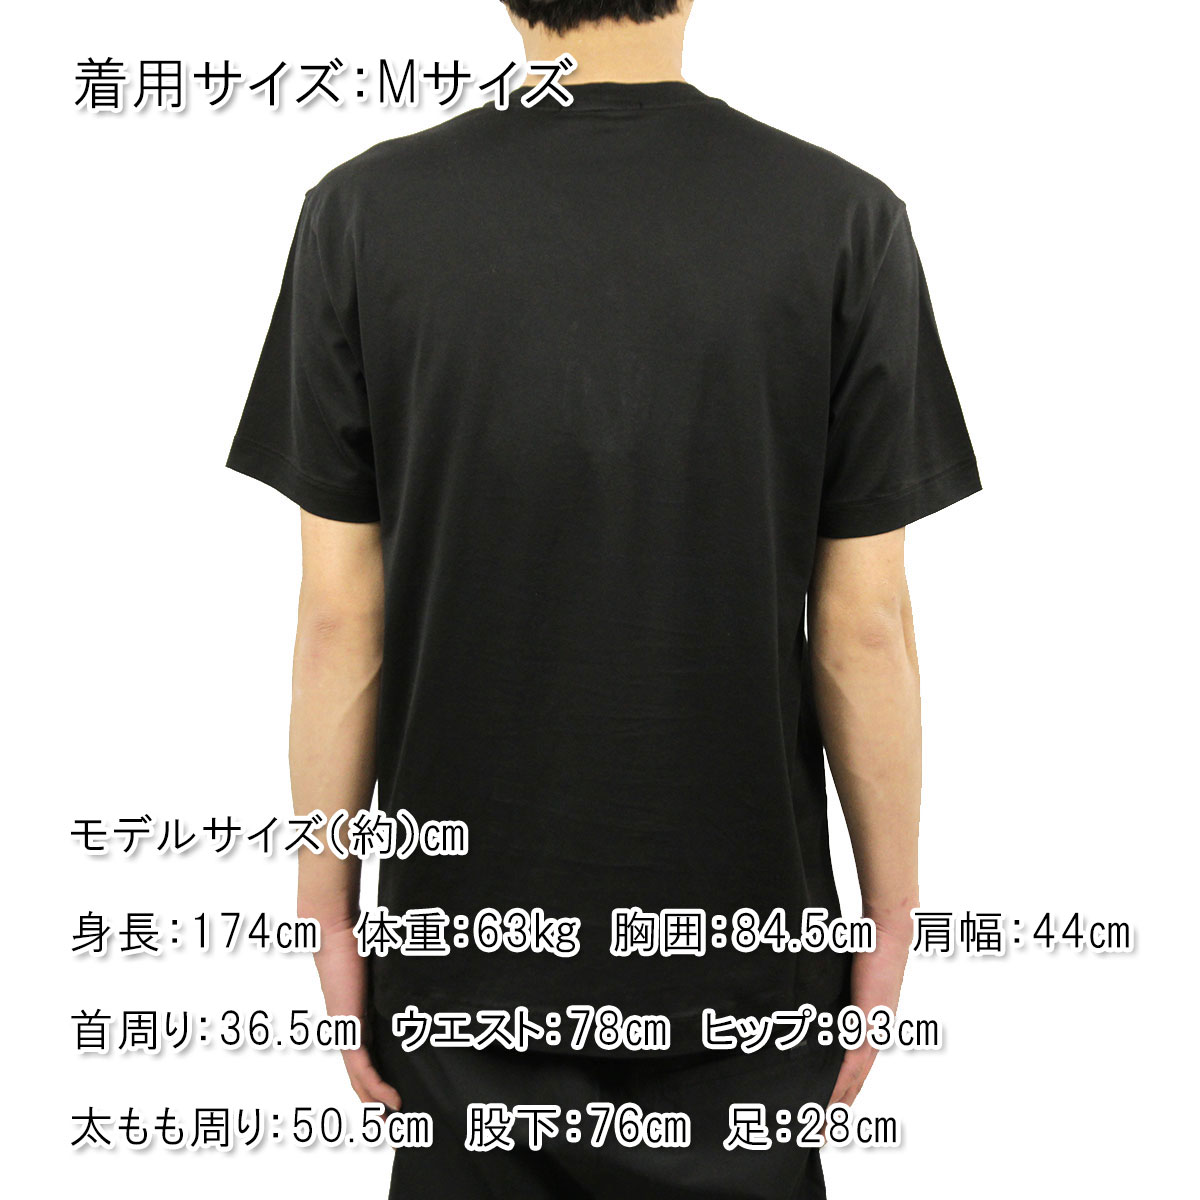 ストーンアイランド Tシャツ メンズ 正規品 STONE ISLAND 半袖Tシャツ T-SHIRT BLACK NERO 24113 V0029 |  ブランド品セレクトショップ MIXON